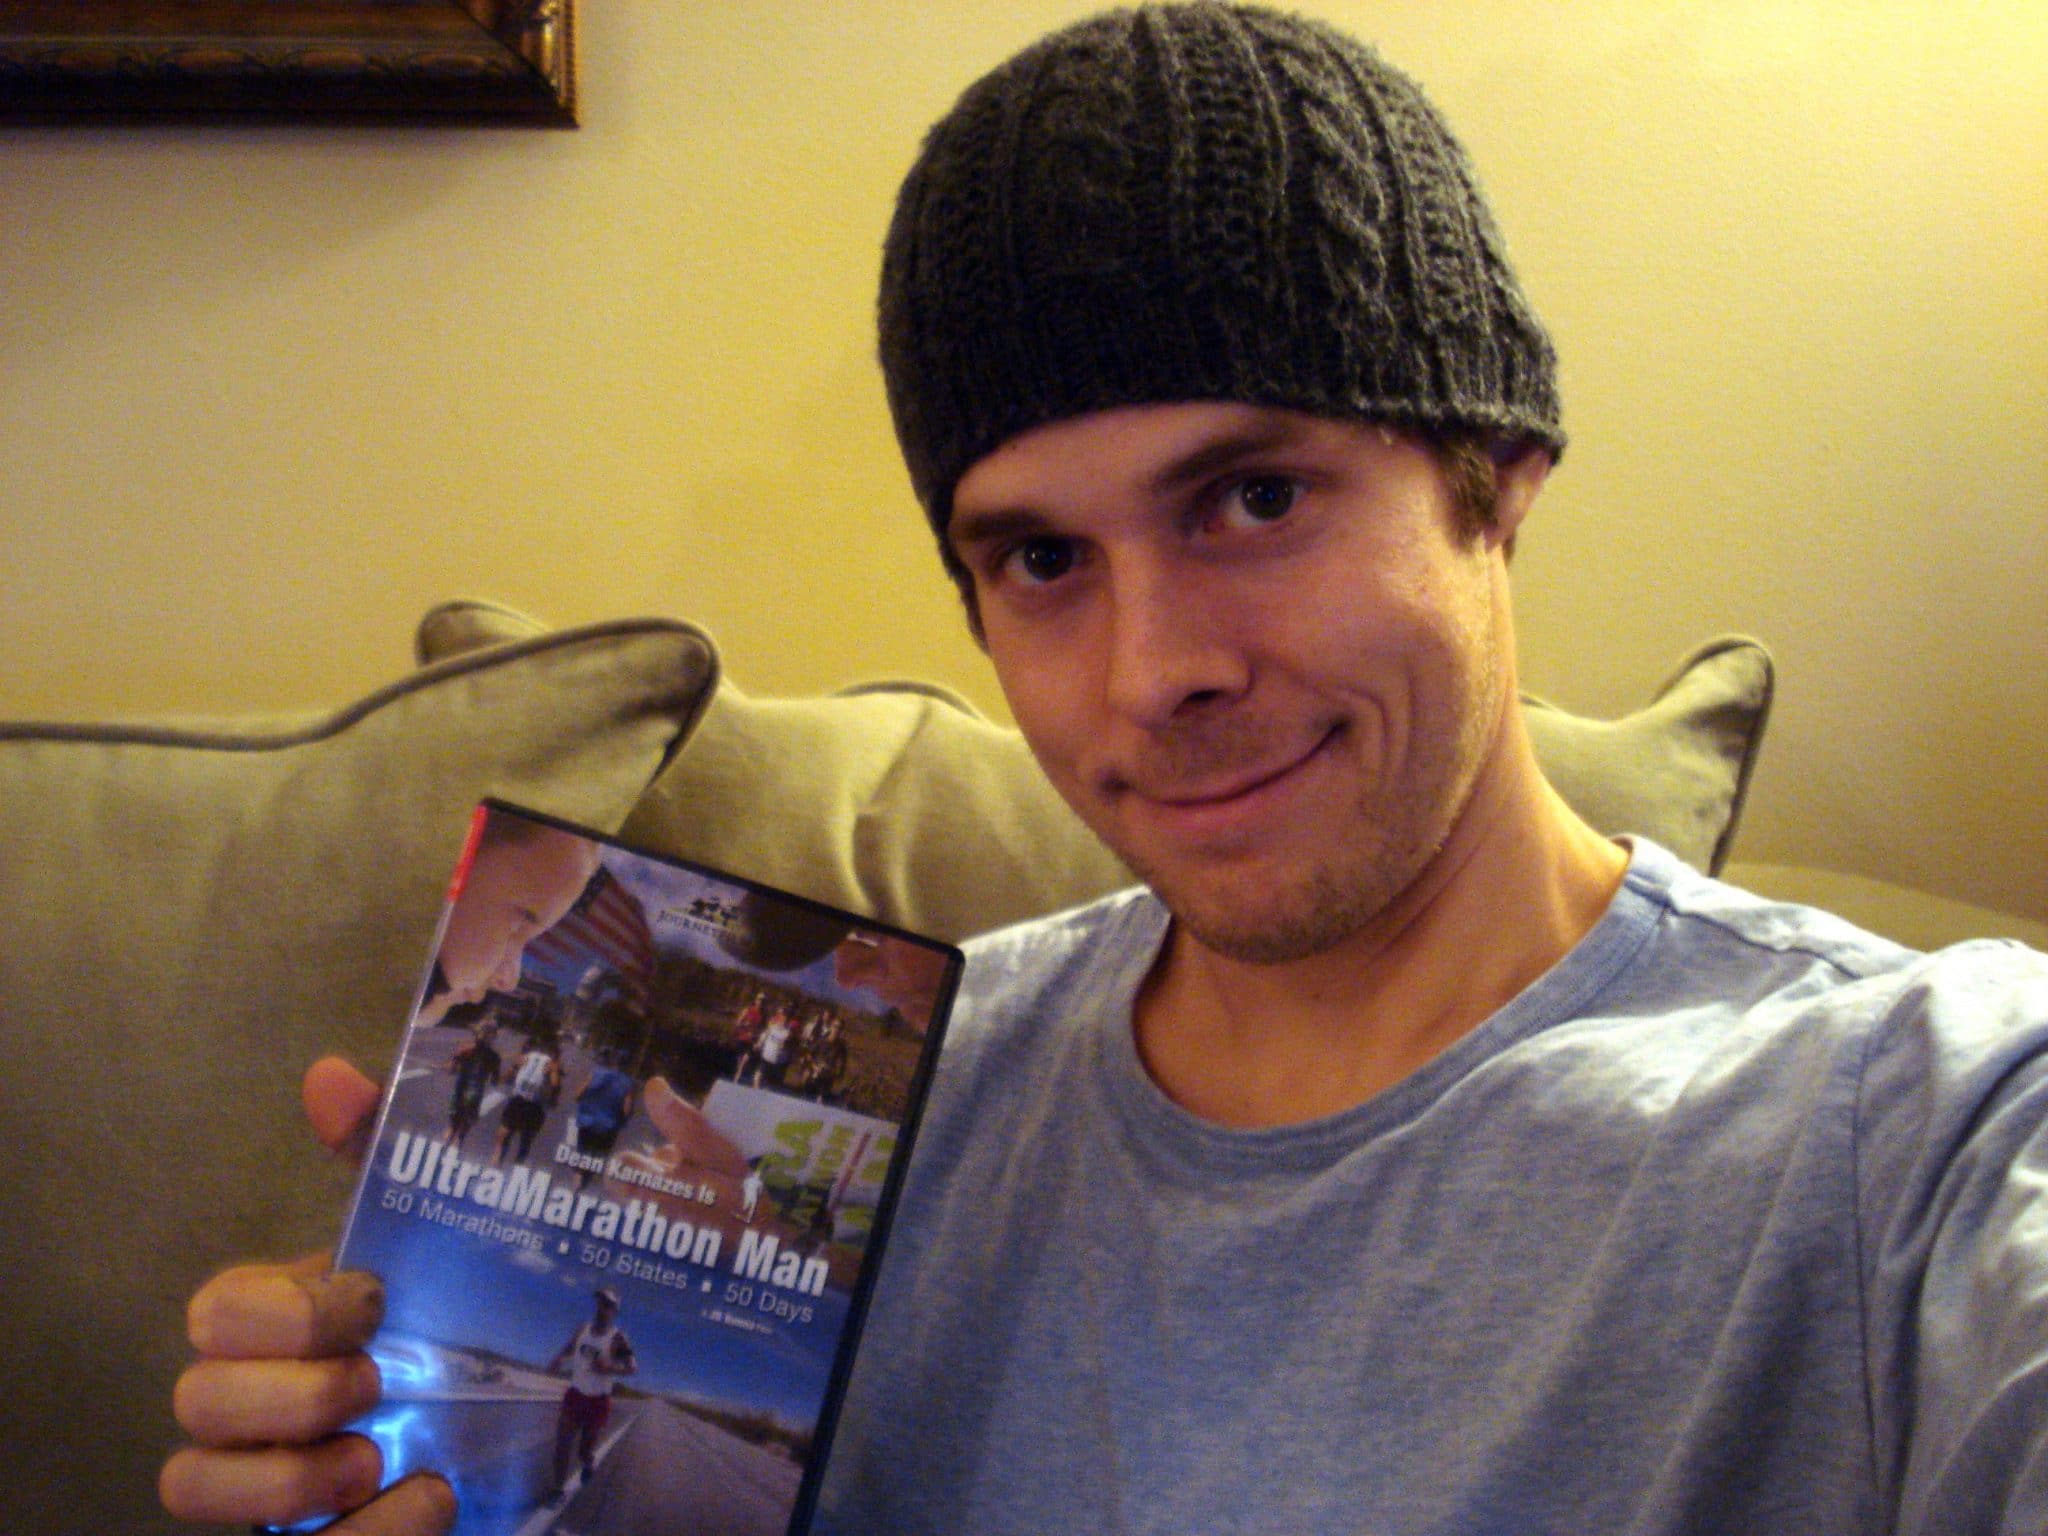 Matt posing with DVD "Ultramarathon Man"